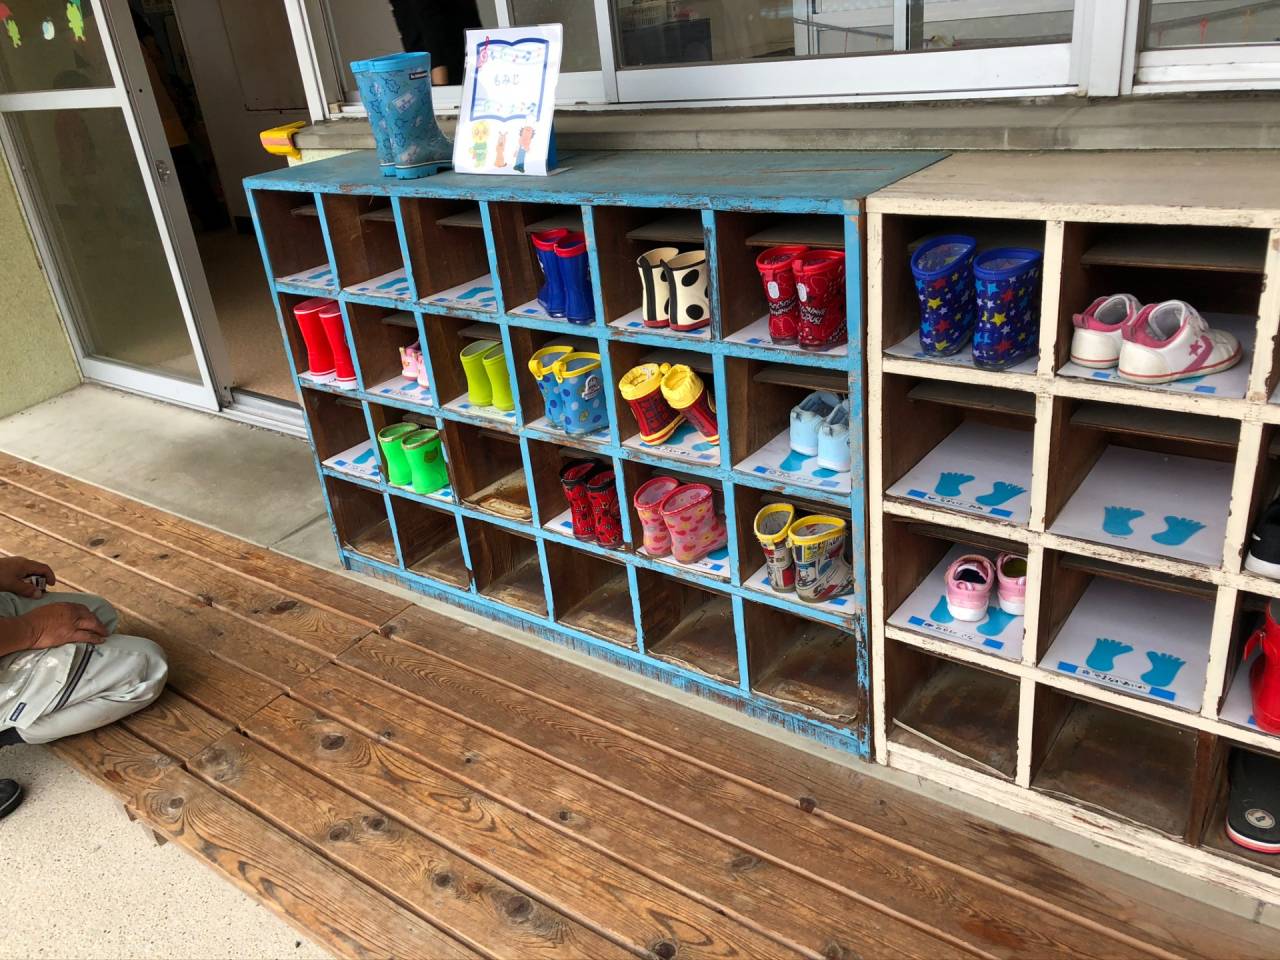 当初の靴箱はクラスごとに色分けされて子供たちにの自分の靴箱の位置がすぐに分かるようにされていました。子供たちの小さい靴が可愛いですね。